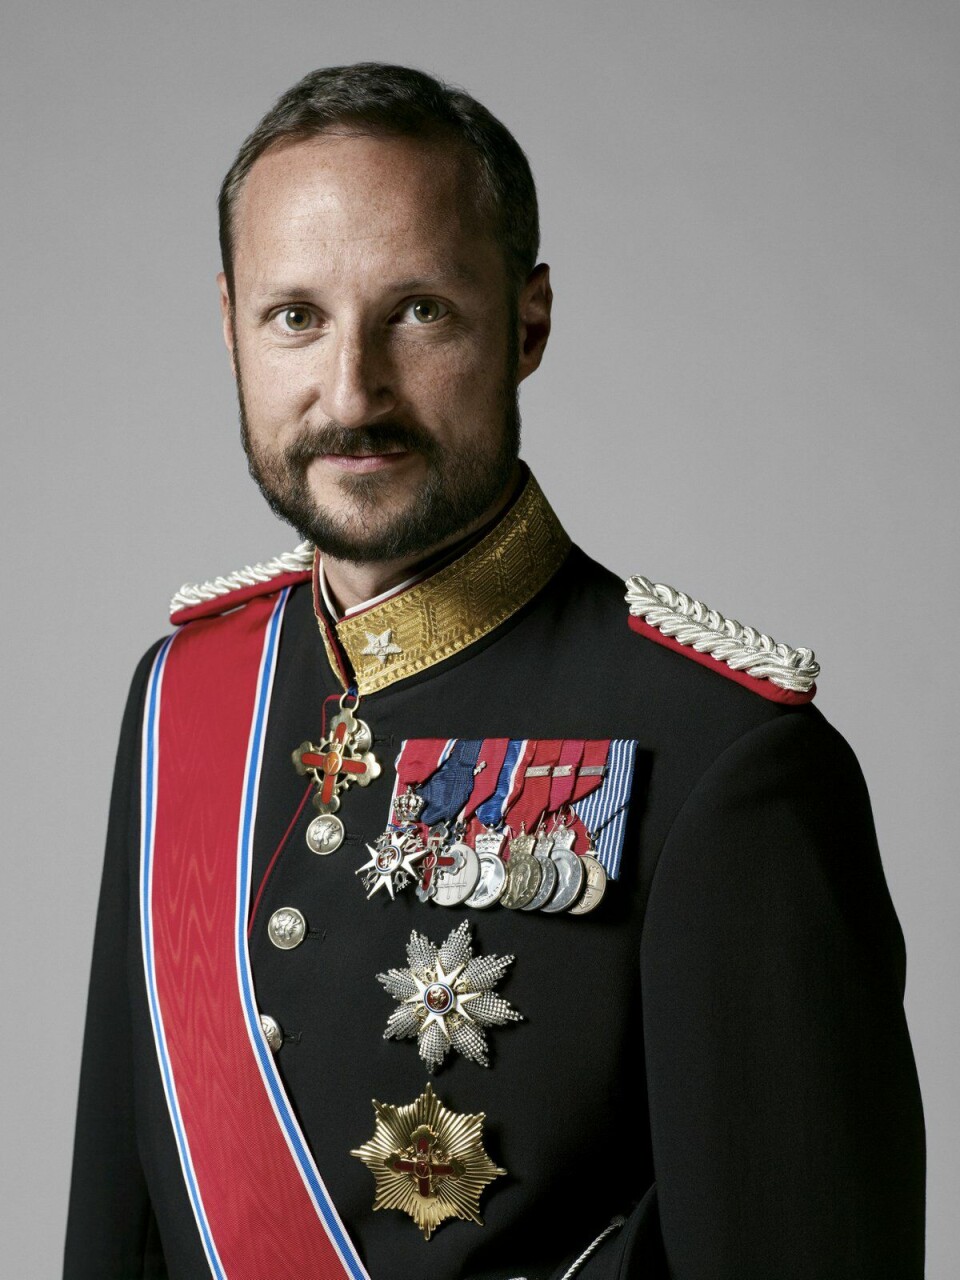 Prinsheerlijk Haakon Magnus